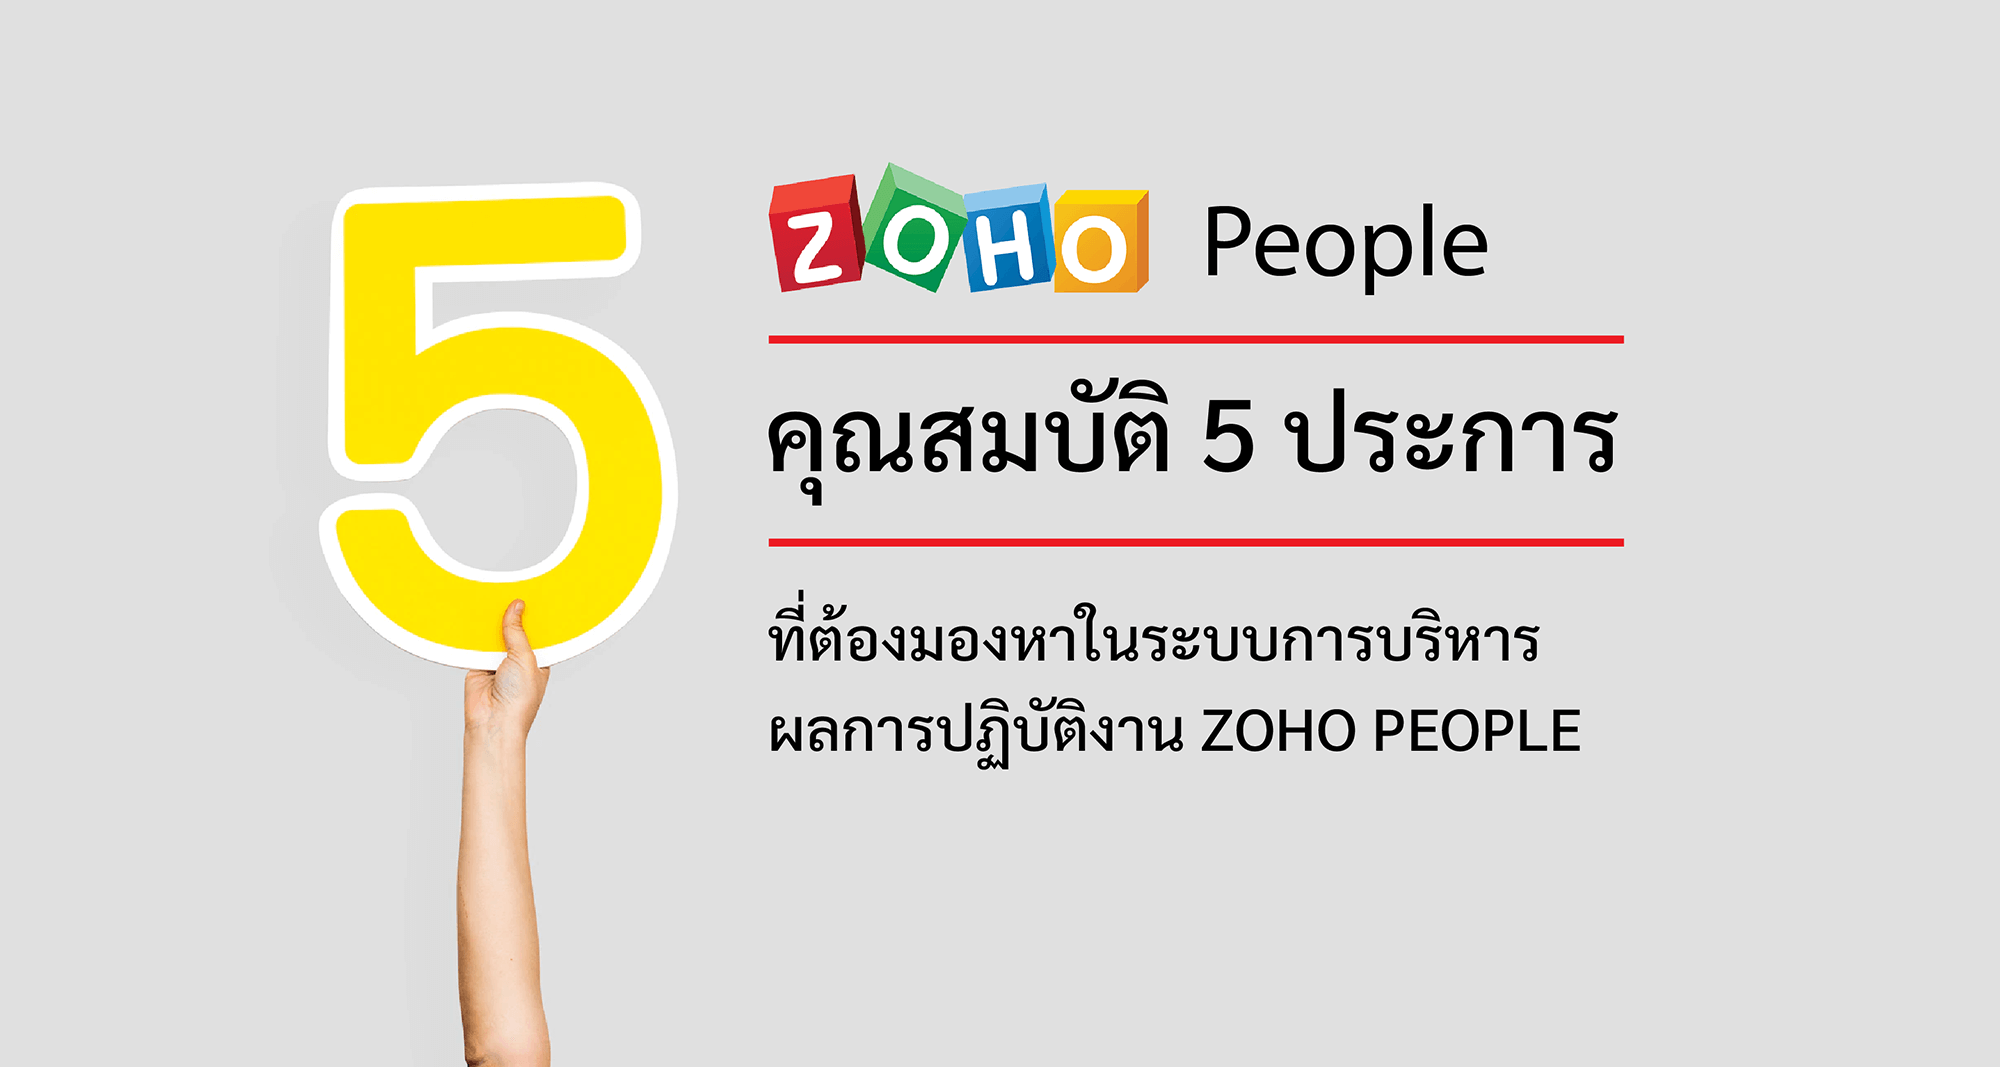 คุณสมบัติ 5 ประการที่ต้องมองหาในระบบการบริหารผลการปฏิบัติงาน Zoho People